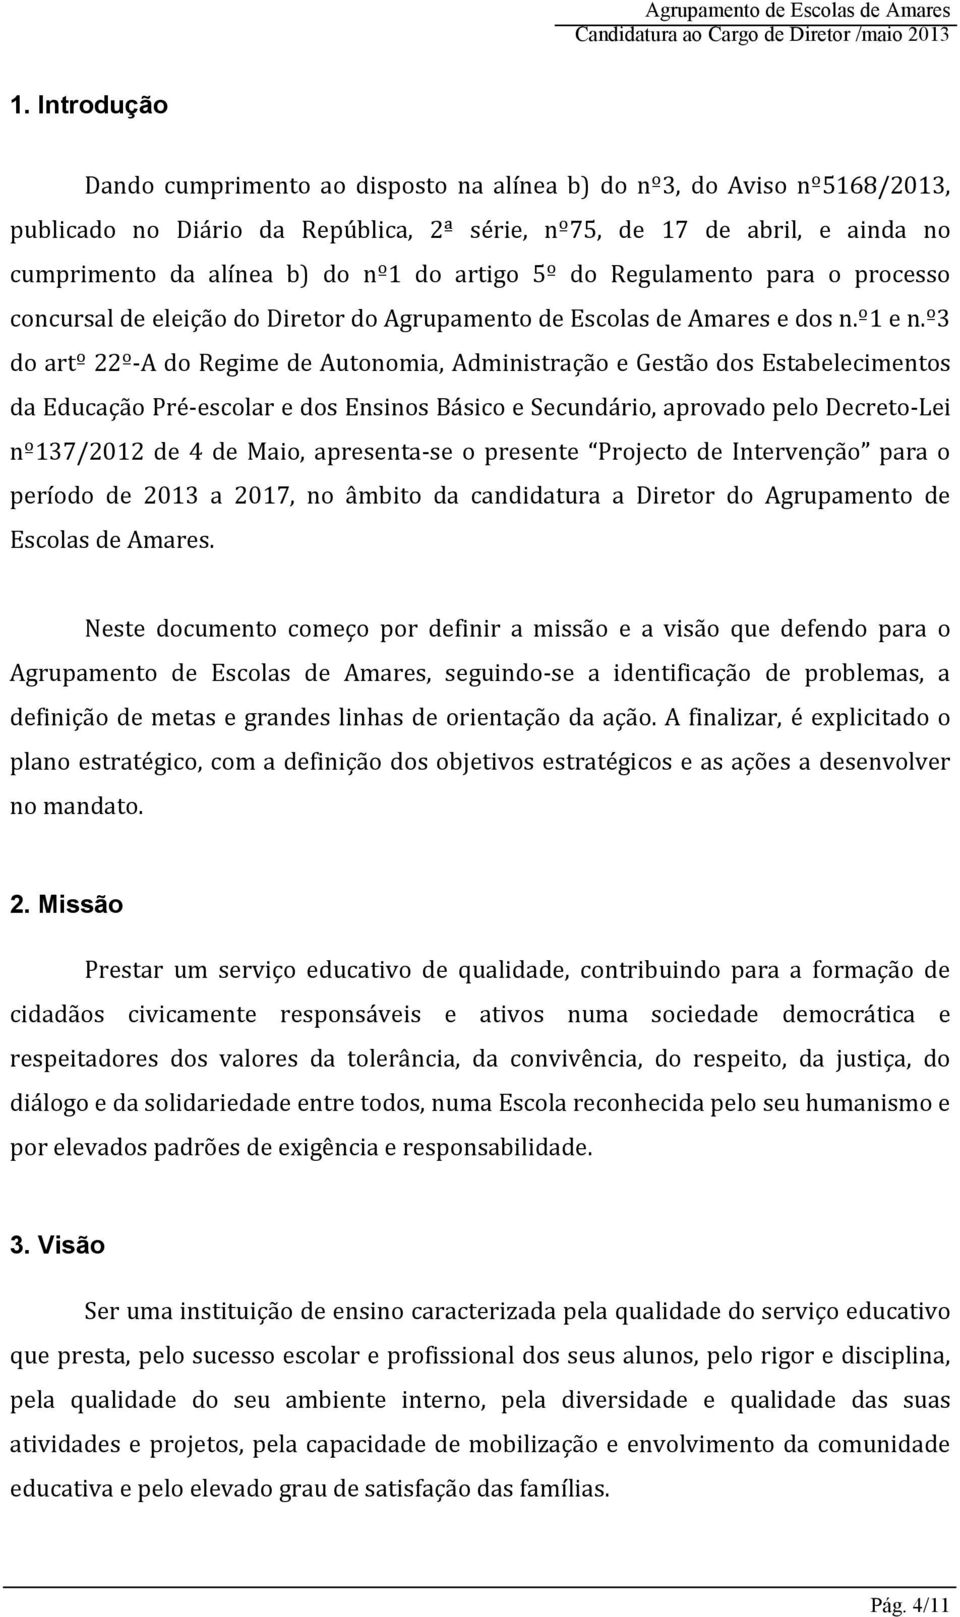 º3 do artº 22º-A do Regime de Autonomia, Administração e Gestão dos Estabelecimentos da Educação Pré-escolar e dos Ensinos Básico e Secundário, aprovado pelo Decreto-Lei nº137/2012 de 4 de Maio,